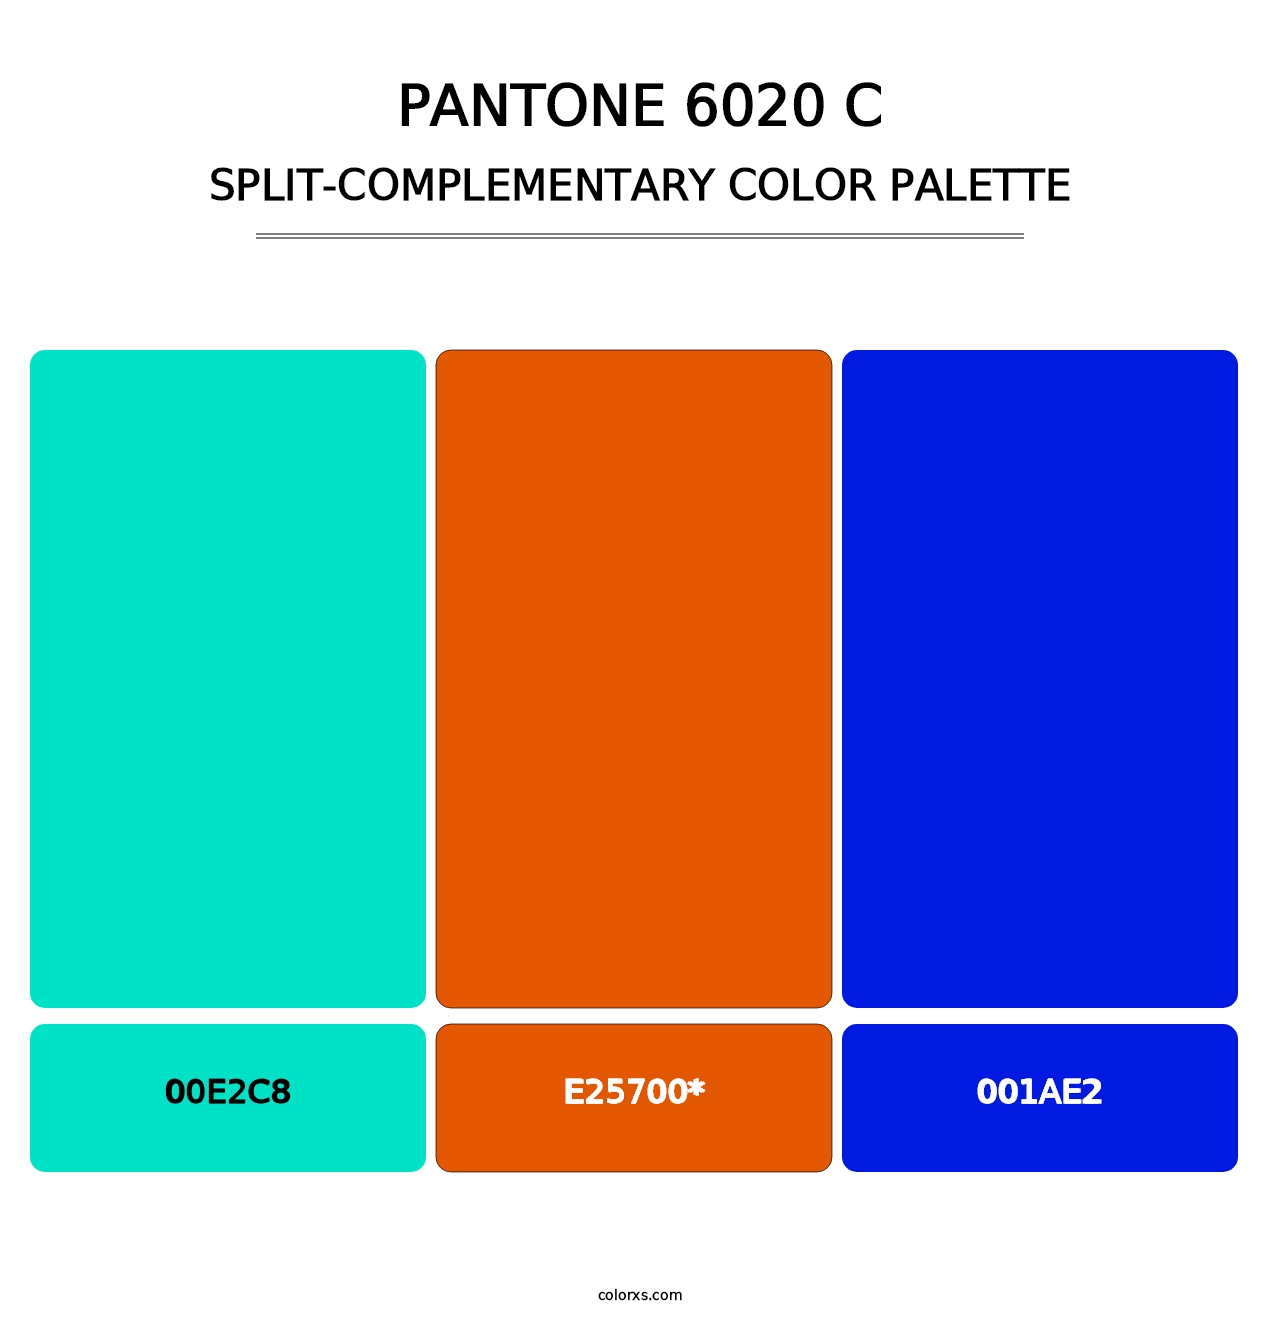 PANTONE 6020 C - Split-Complementary Color Palette